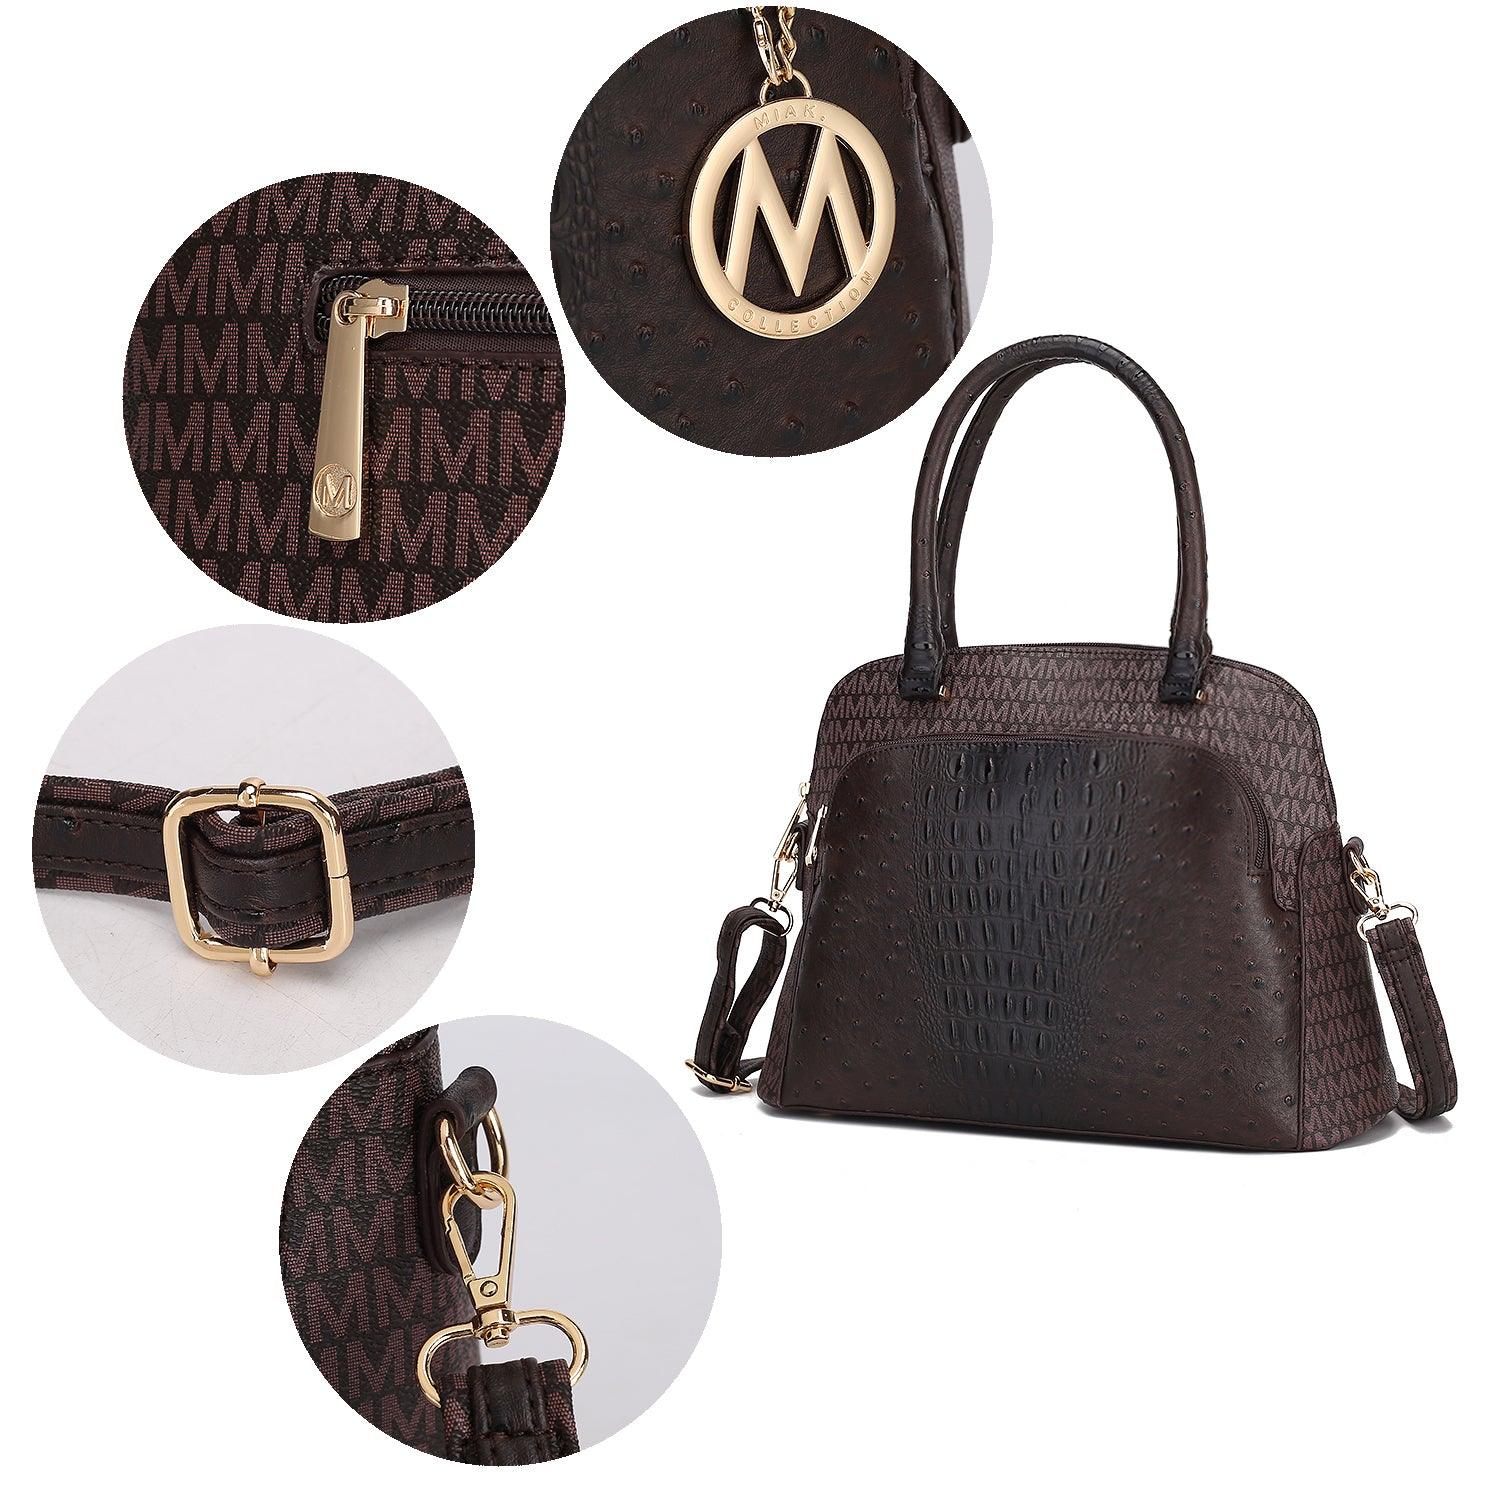 Wallets, Handbags & Accessories Fiona Tote bag by Mia K.